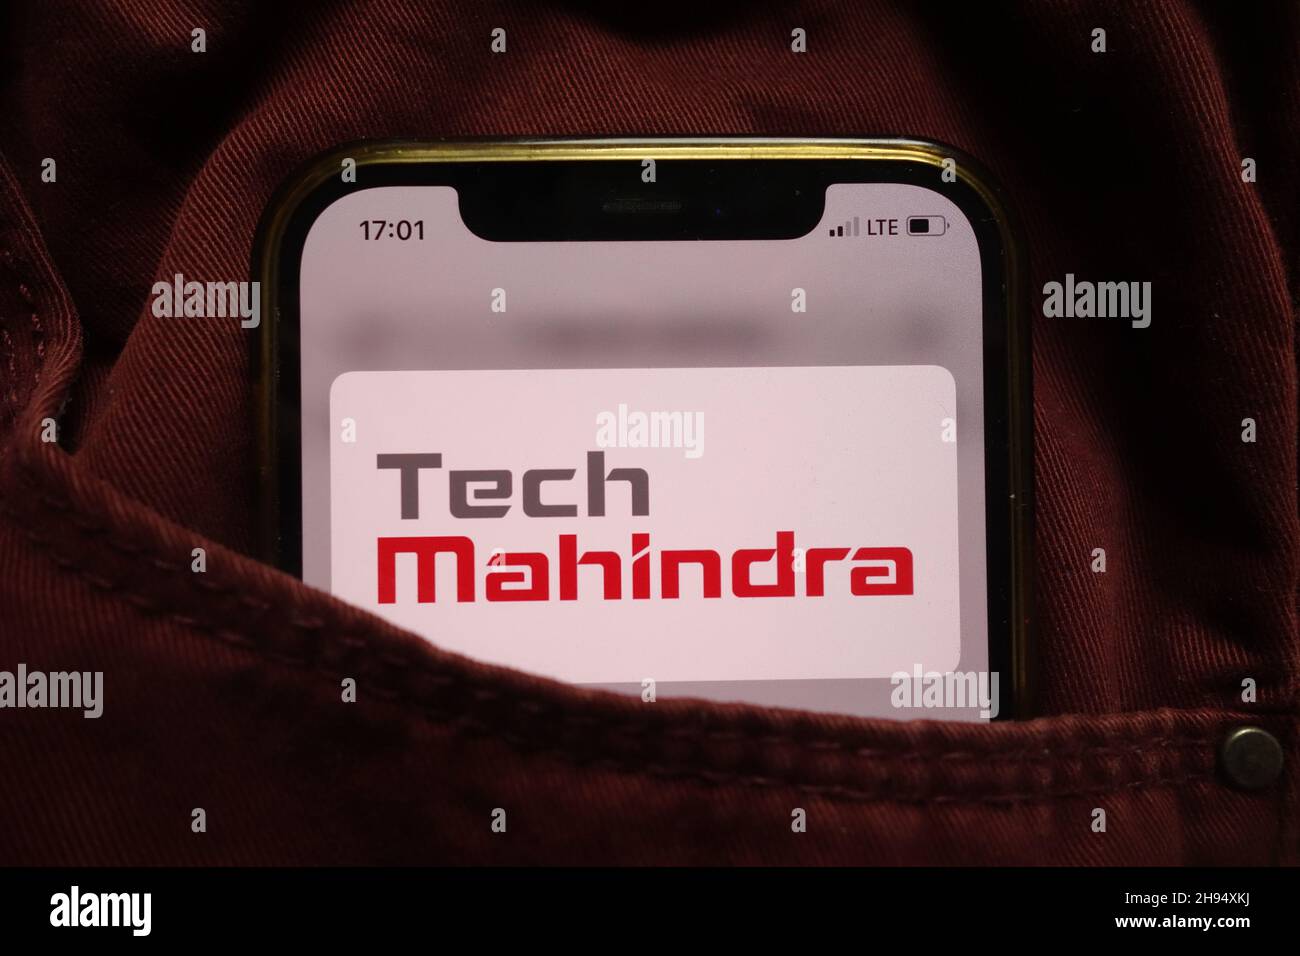 KONSKIE, POLOGNE - 15 septembre 2021 : logo de TECH Mahindra Limited affiché sur un téléphone mobile caché dans une poche de jeans Banque D'Images